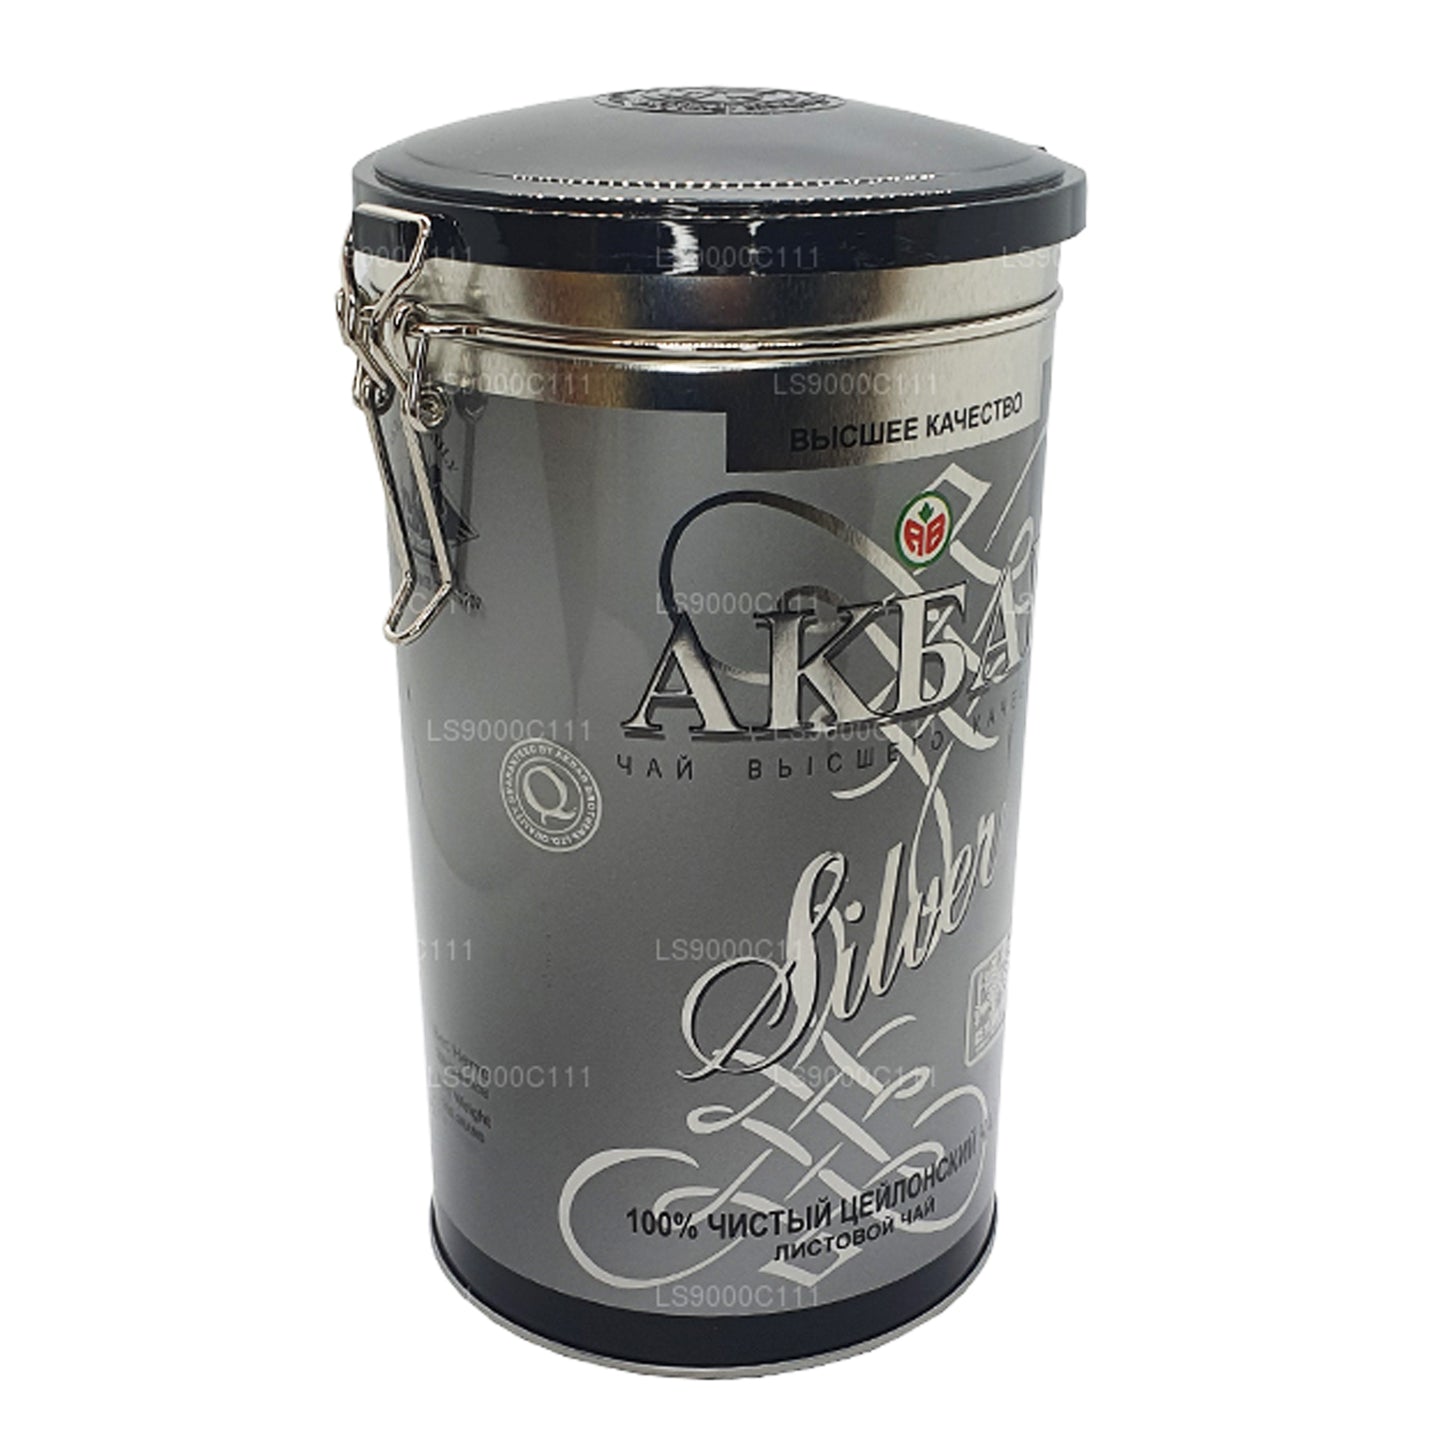 Akbar Silver Leaf Tea (300g)